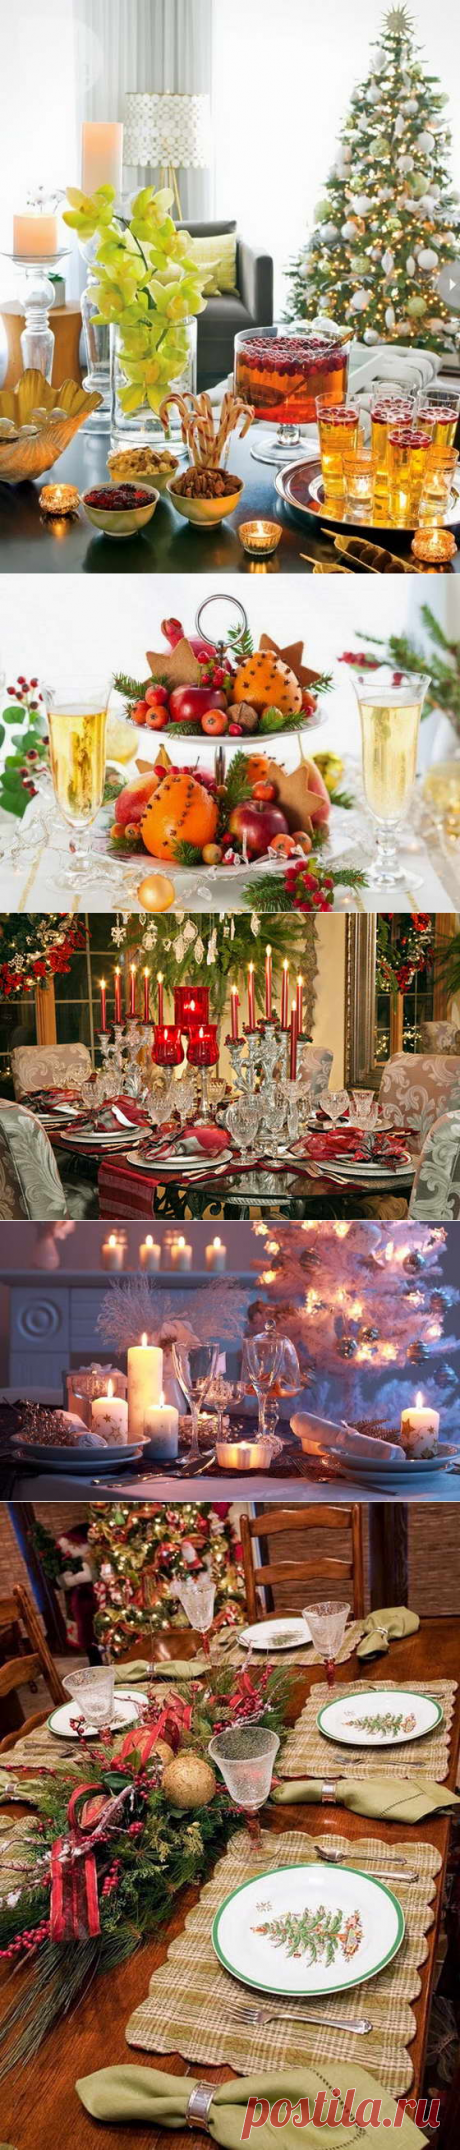 Новогодняя праздничная сервировка стола | Любимый дом